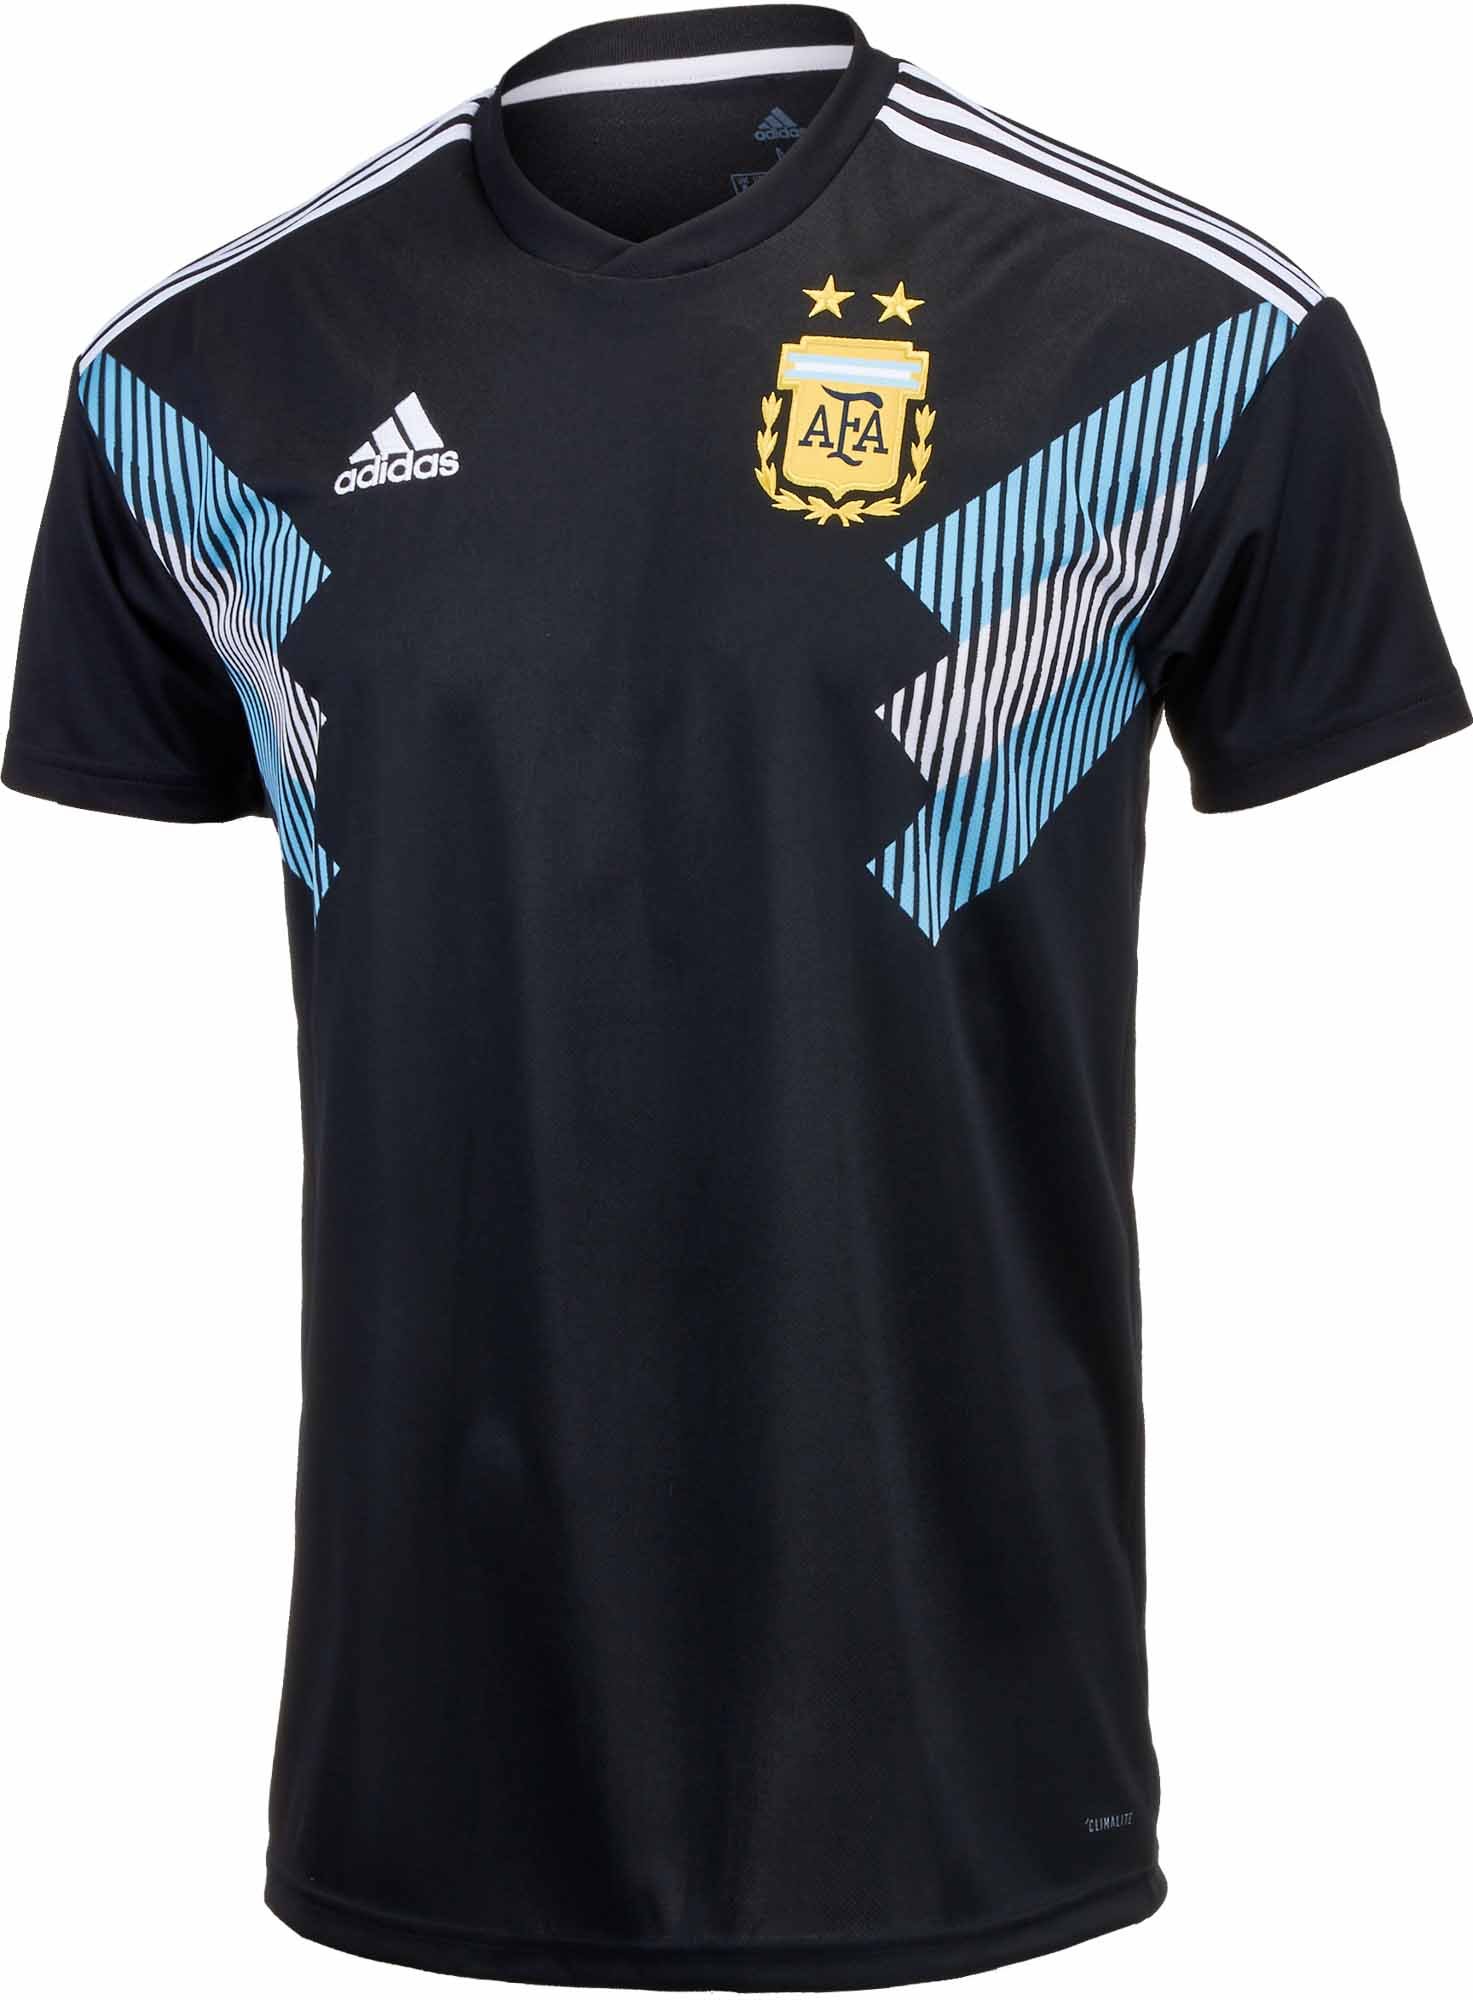 argentina jersey kids